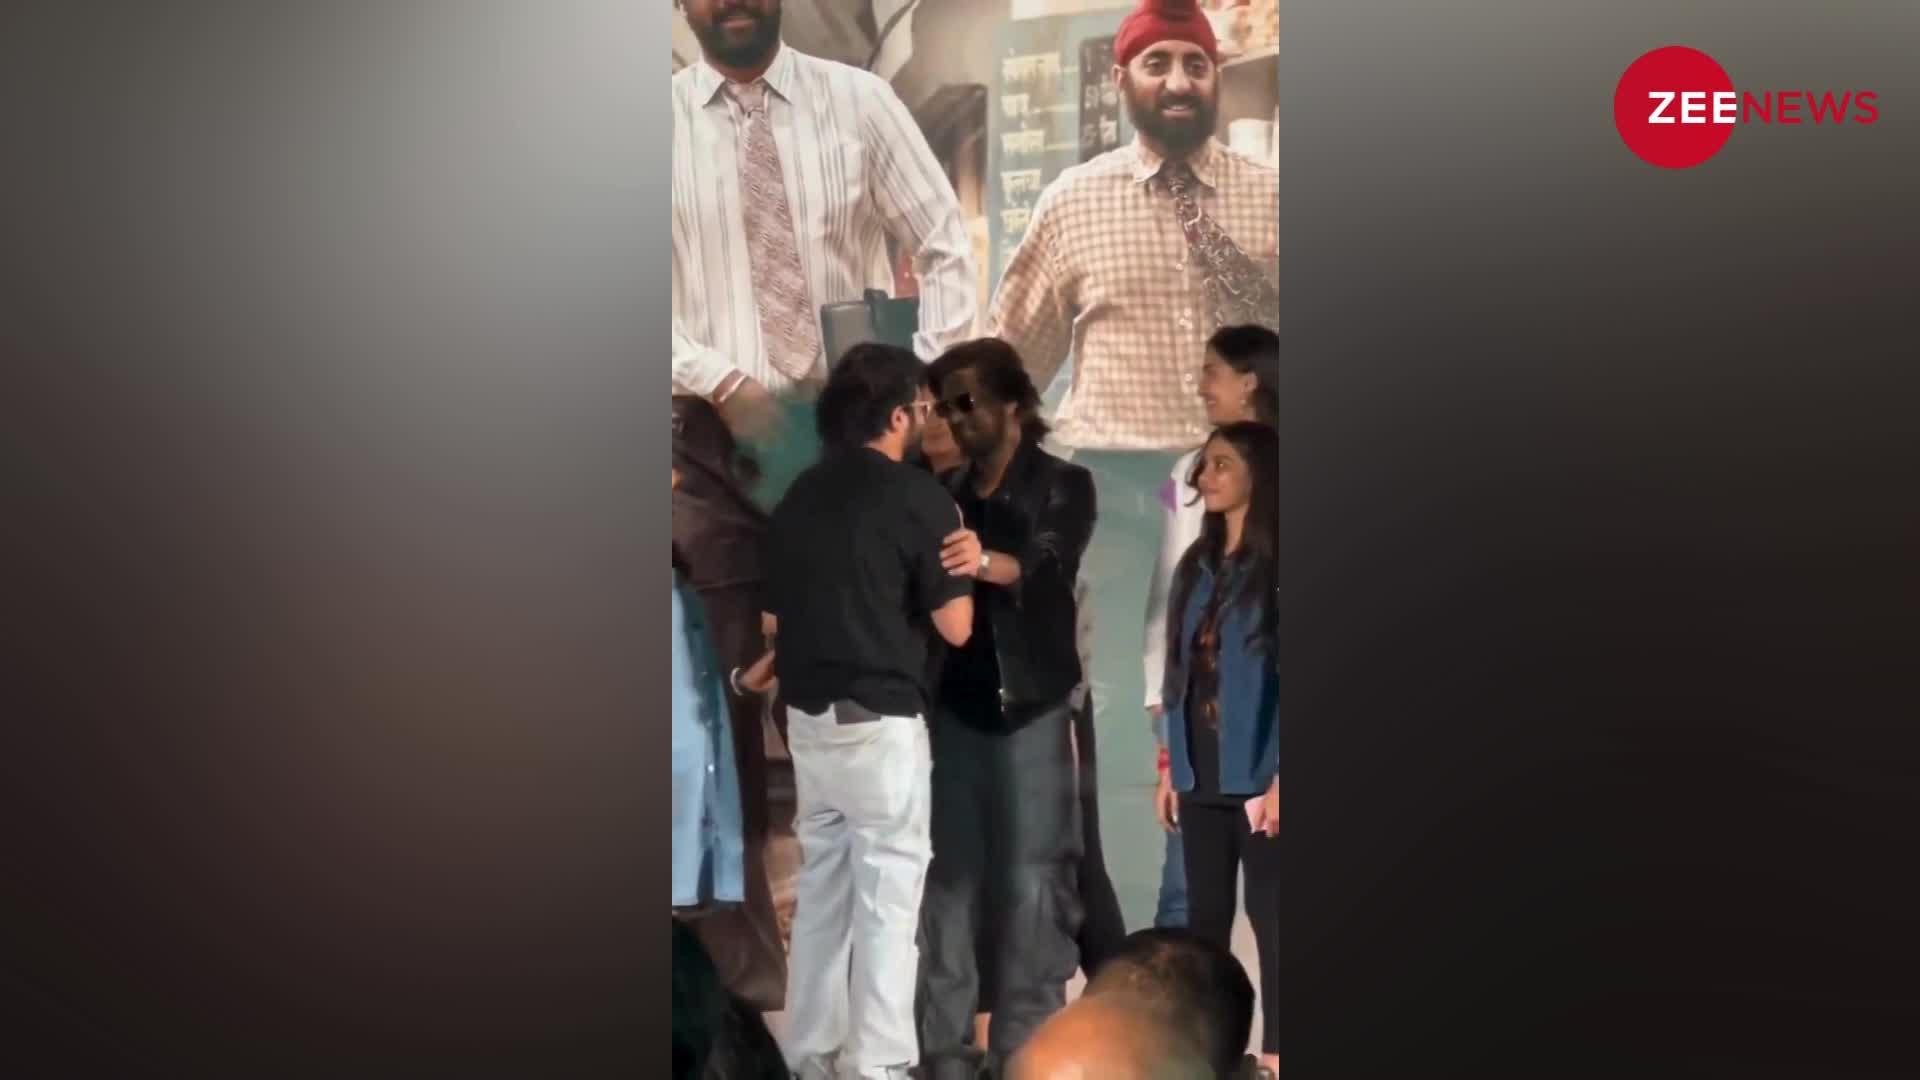 Shah Rukh khan को देख स्टेज पर कांपने लगा फैन, एक्टर ने हाथ पकड़ा फिर गले लगाया; वायरल हुआ वीडियो